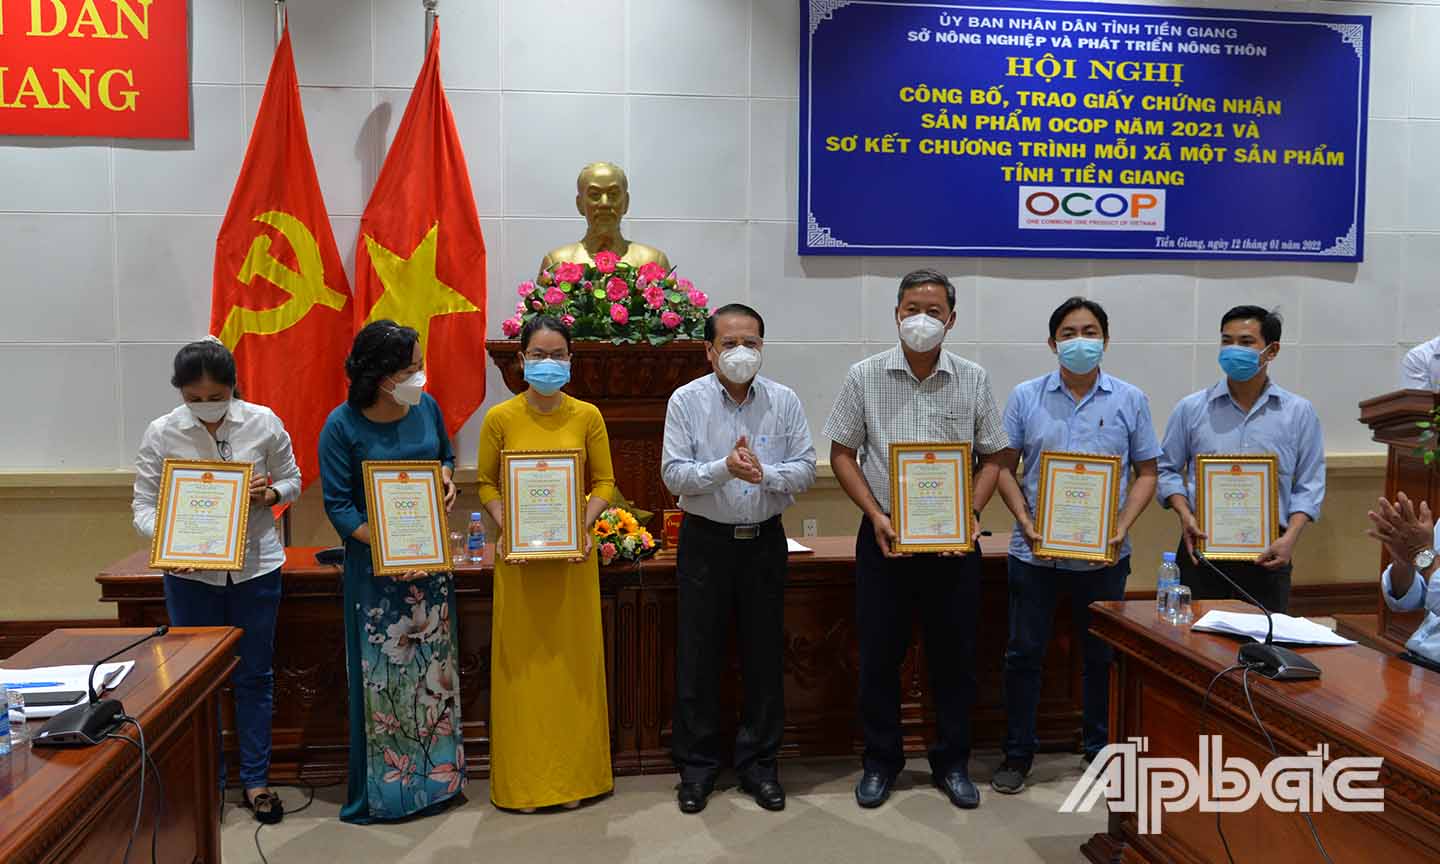 Đồng chí Phạm Văn Trọng trao chứng nhận sản phẩm OCOP cho các chủ thể sản xuất.